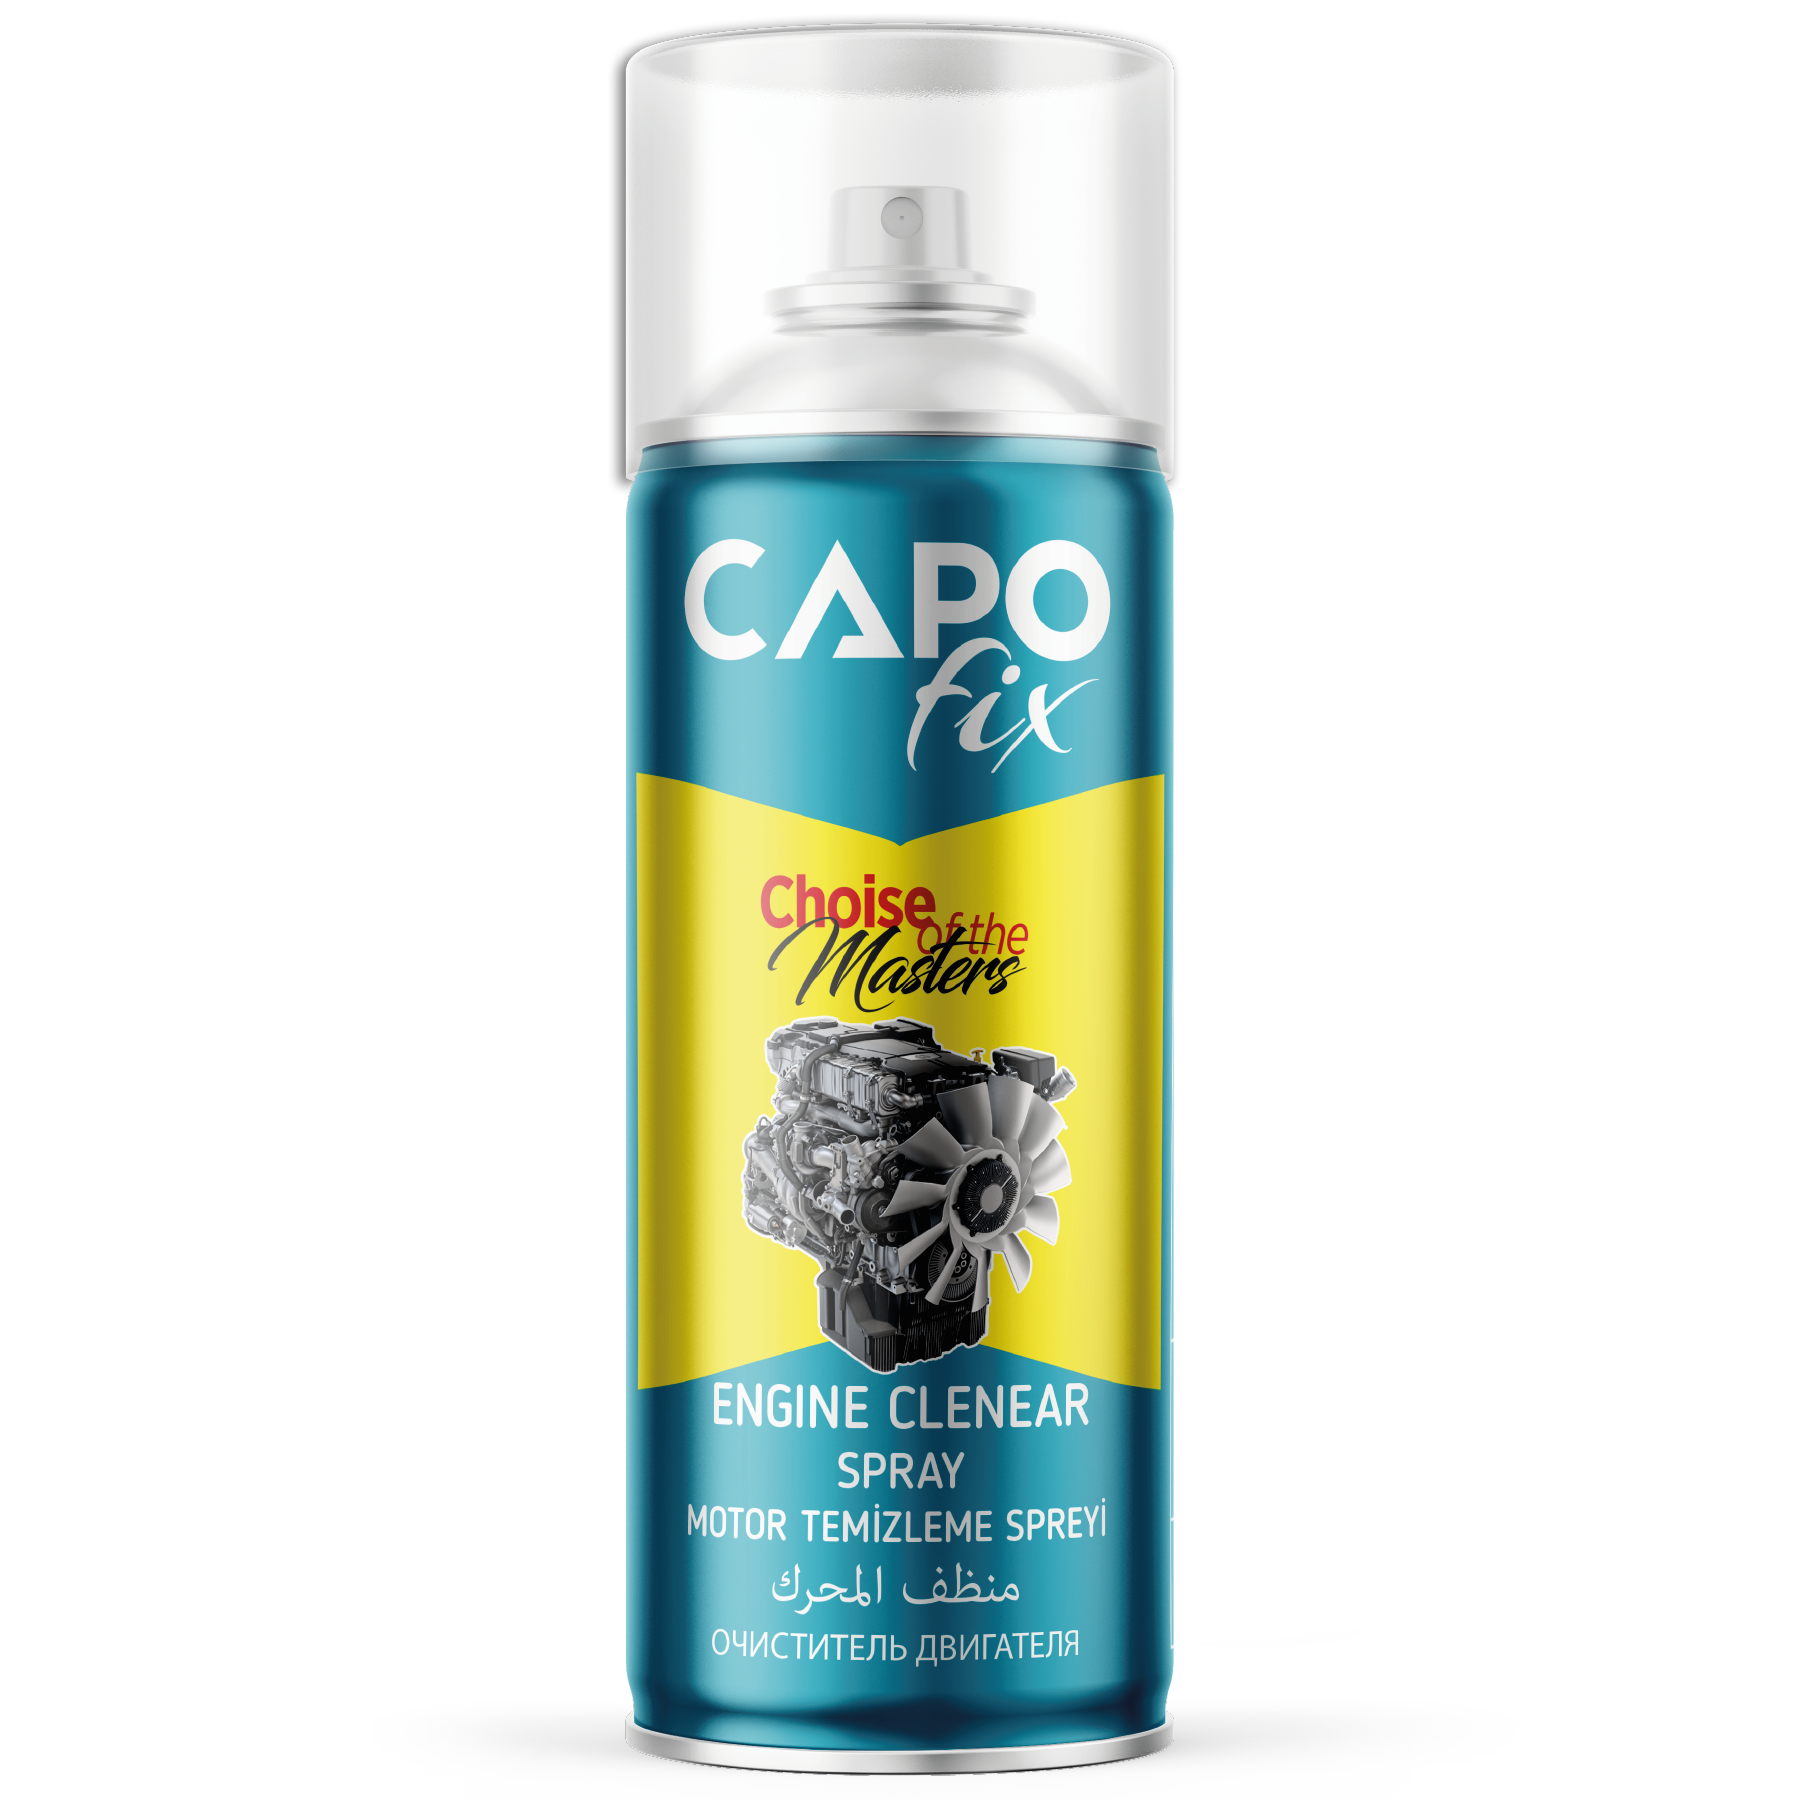 .CAPO fix Engine Cleaner Spray.